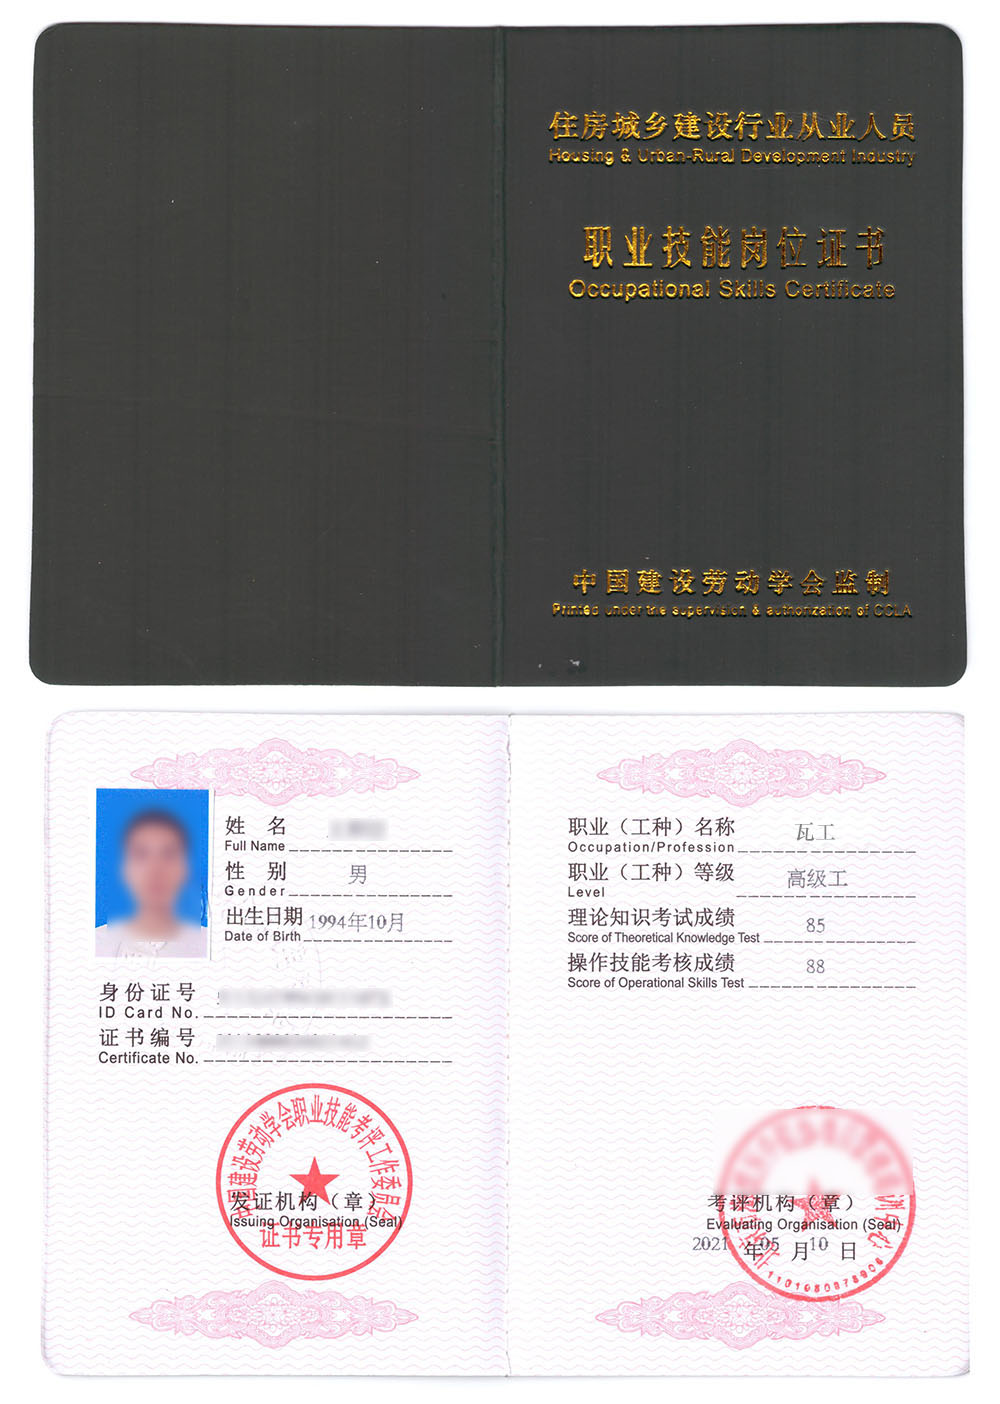 中国建设劳动学会 职业技能岗位证书 瓦工证书样本